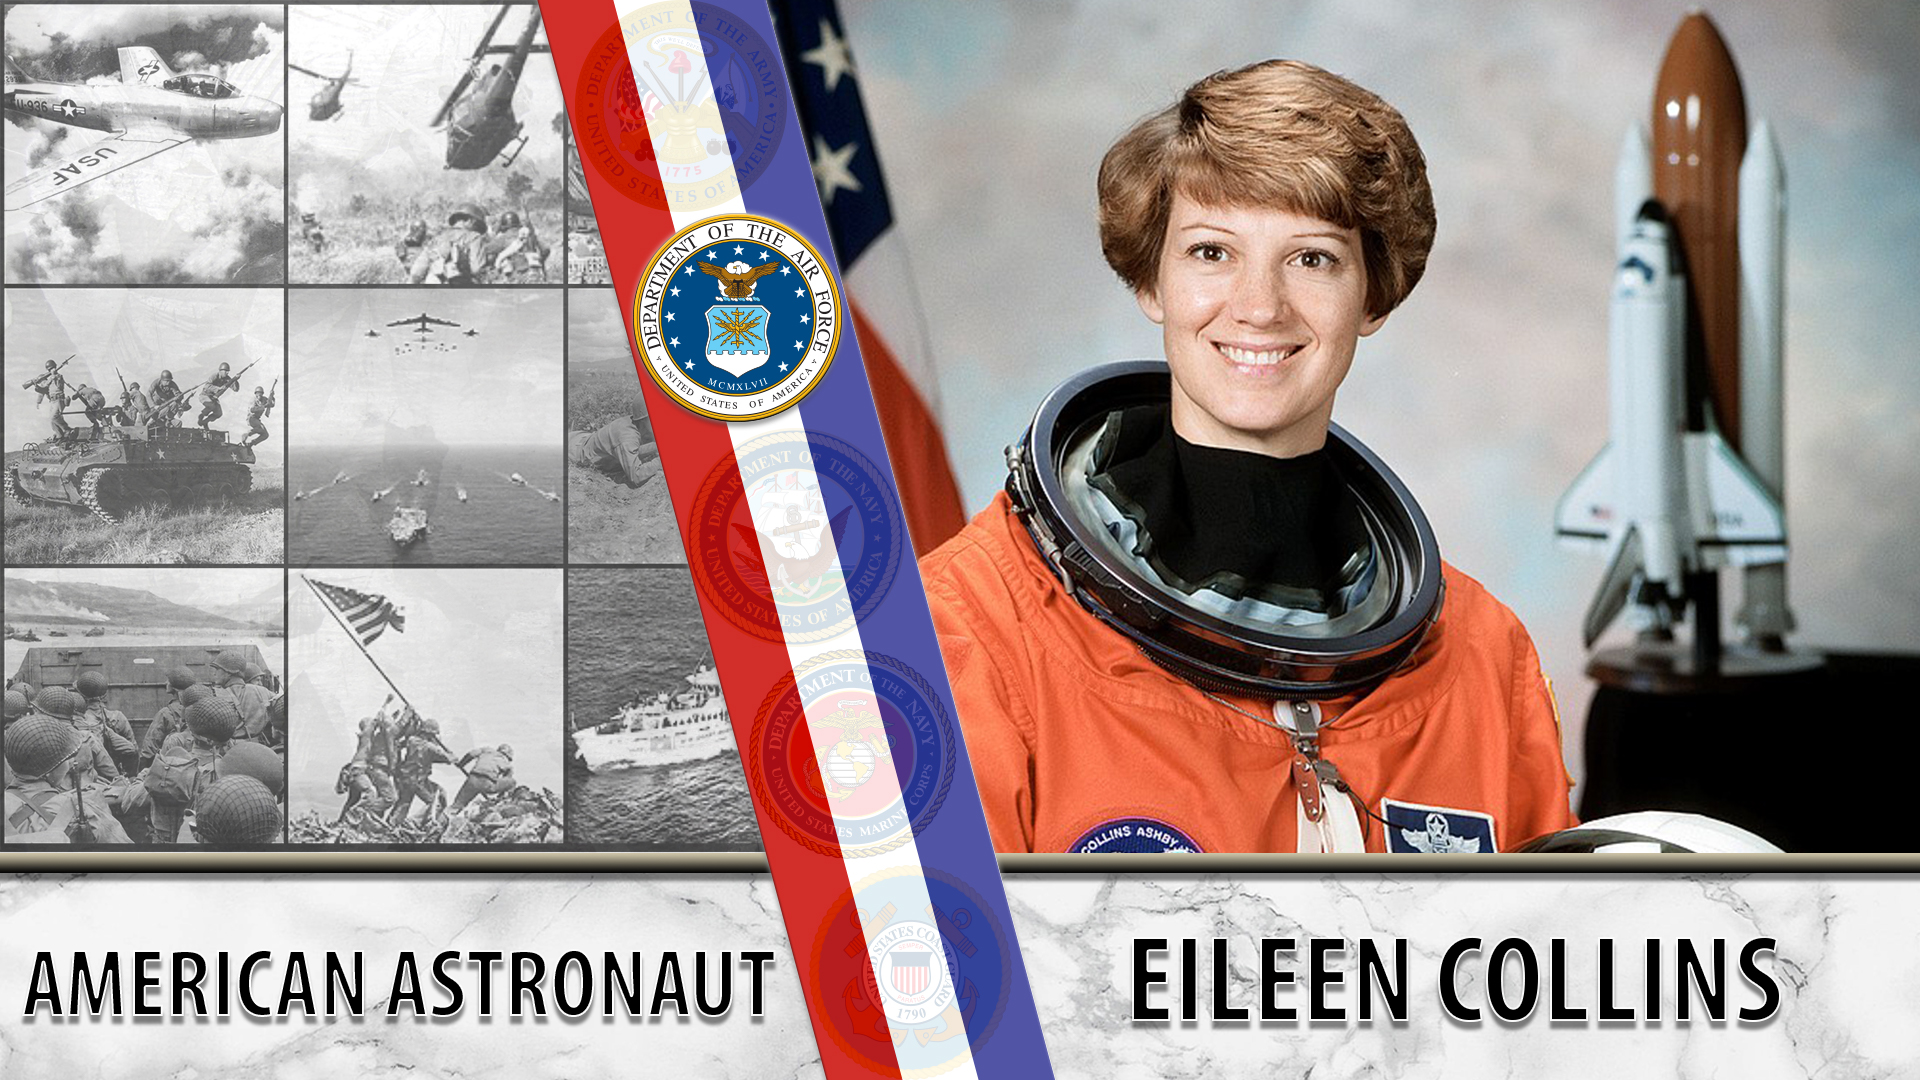 Eileen Collins astronaut and Veteran